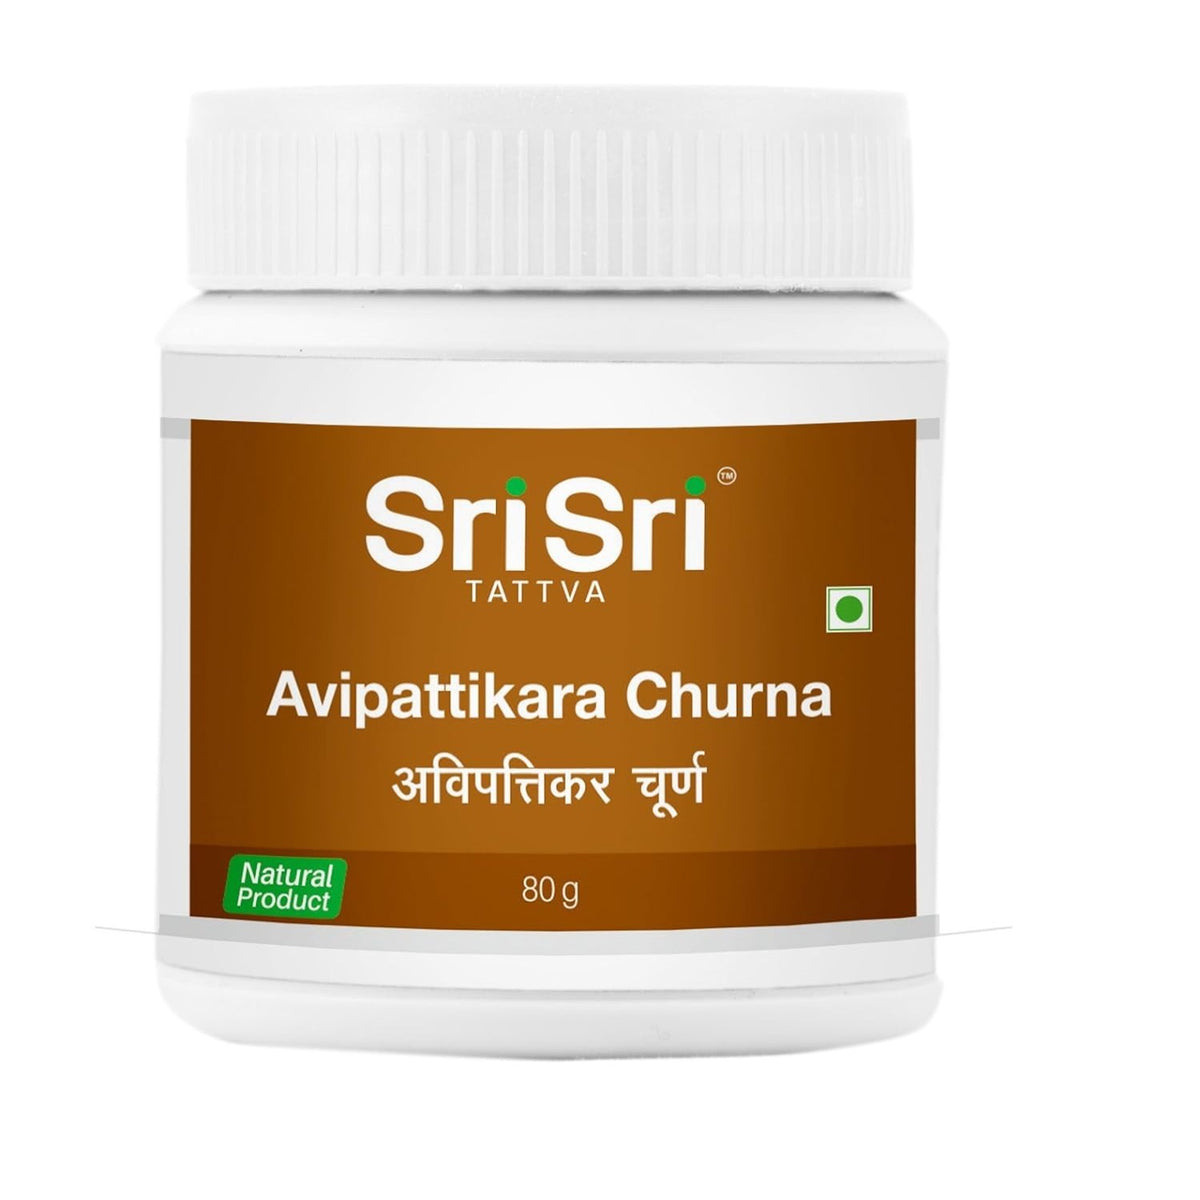 Sri Sri Tattva Ayurvedisches Avipattikara Churna-Pulver 80g